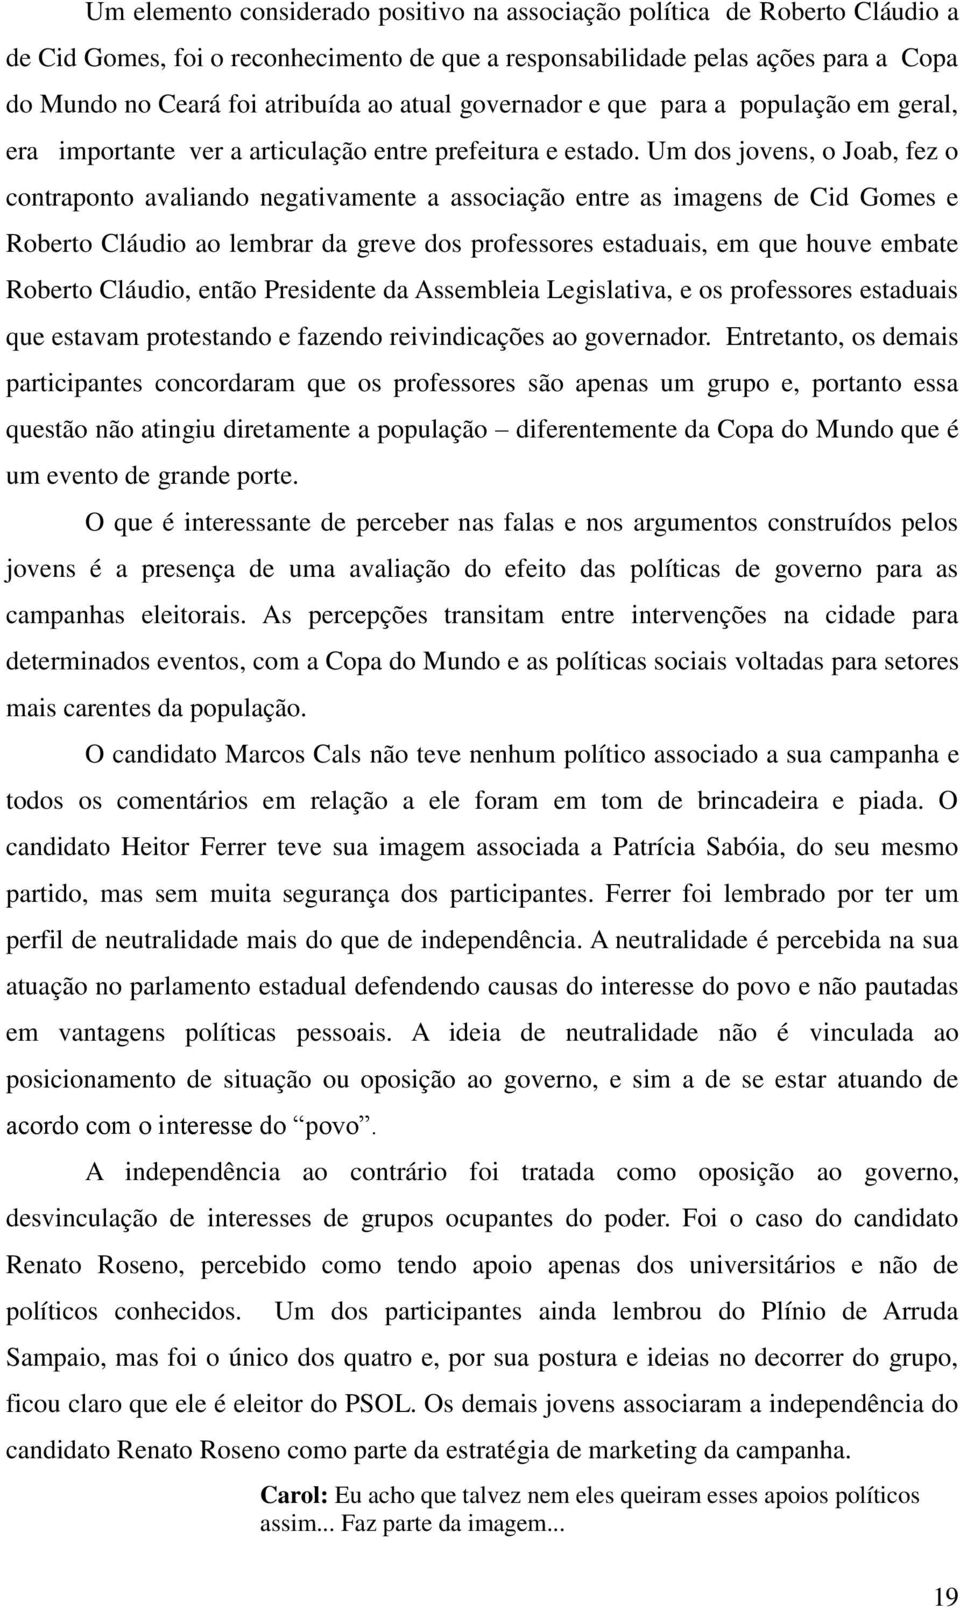 Um dos jovens, o Joab, fez o contraponto avaliando negativamente a associação entre as imagens de Cid Gomes e Roberto Cláudio ao lembrar da greve dos professores estaduais, em que houve embate